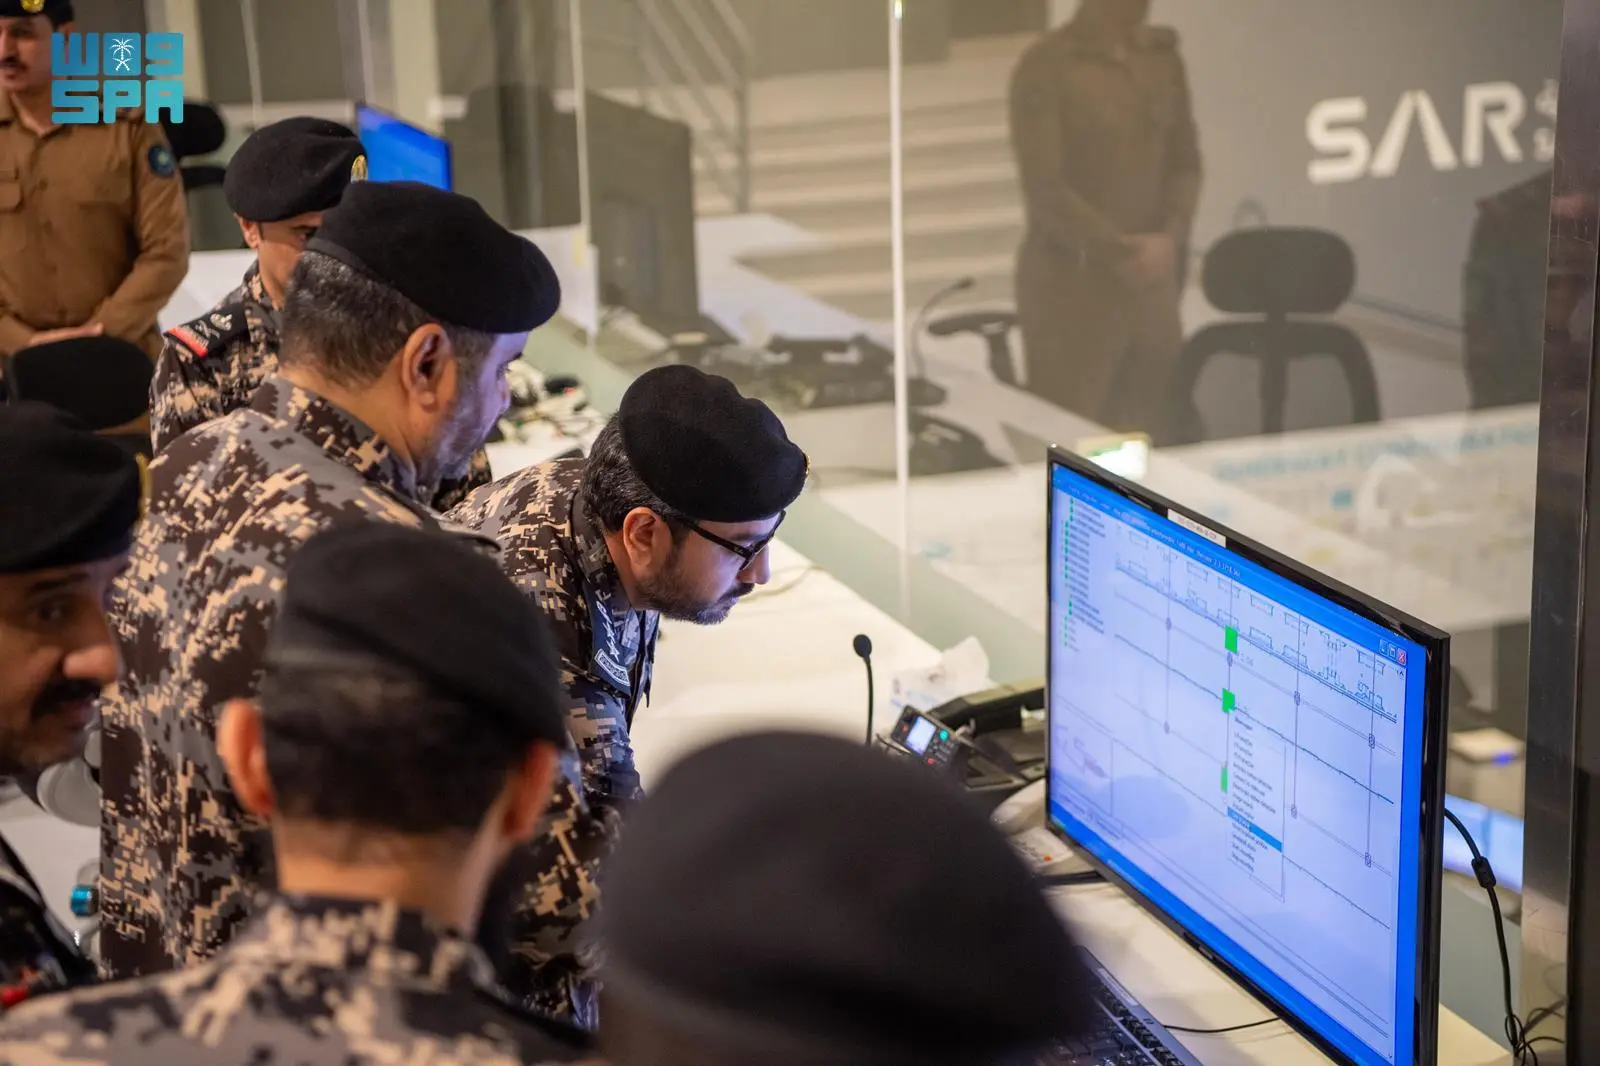 اللواء العتيبي يتفقد قوة أمن المنشآت في محطات قطار الحرمين الشريفين بمحافظة جدة